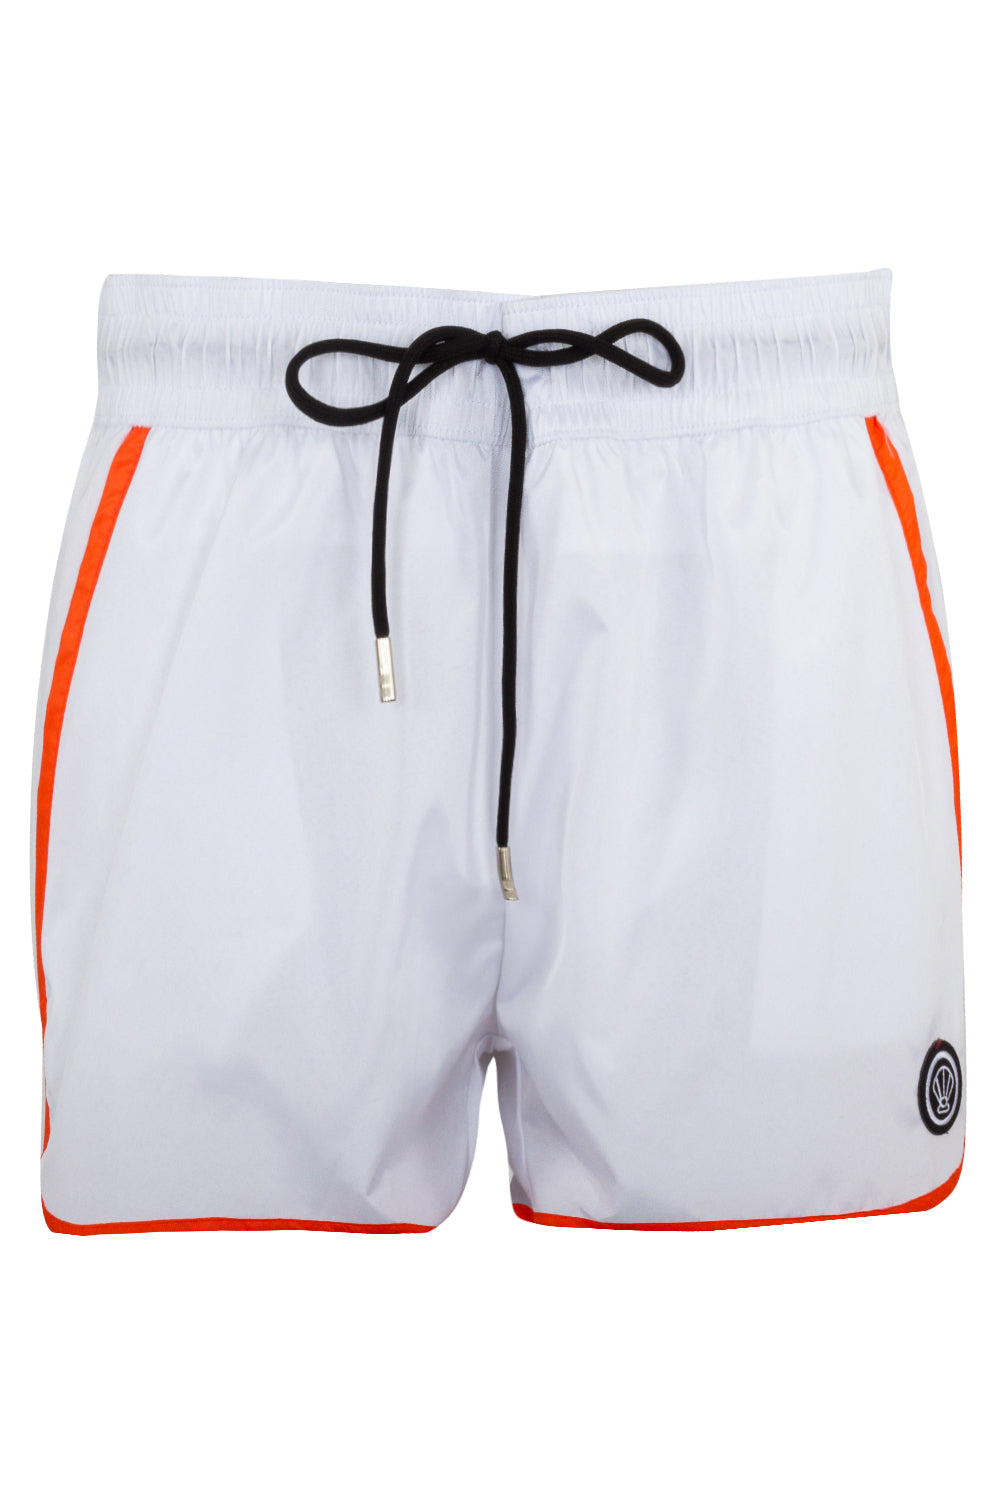 Boxer Bicolor Bianco/Arancio